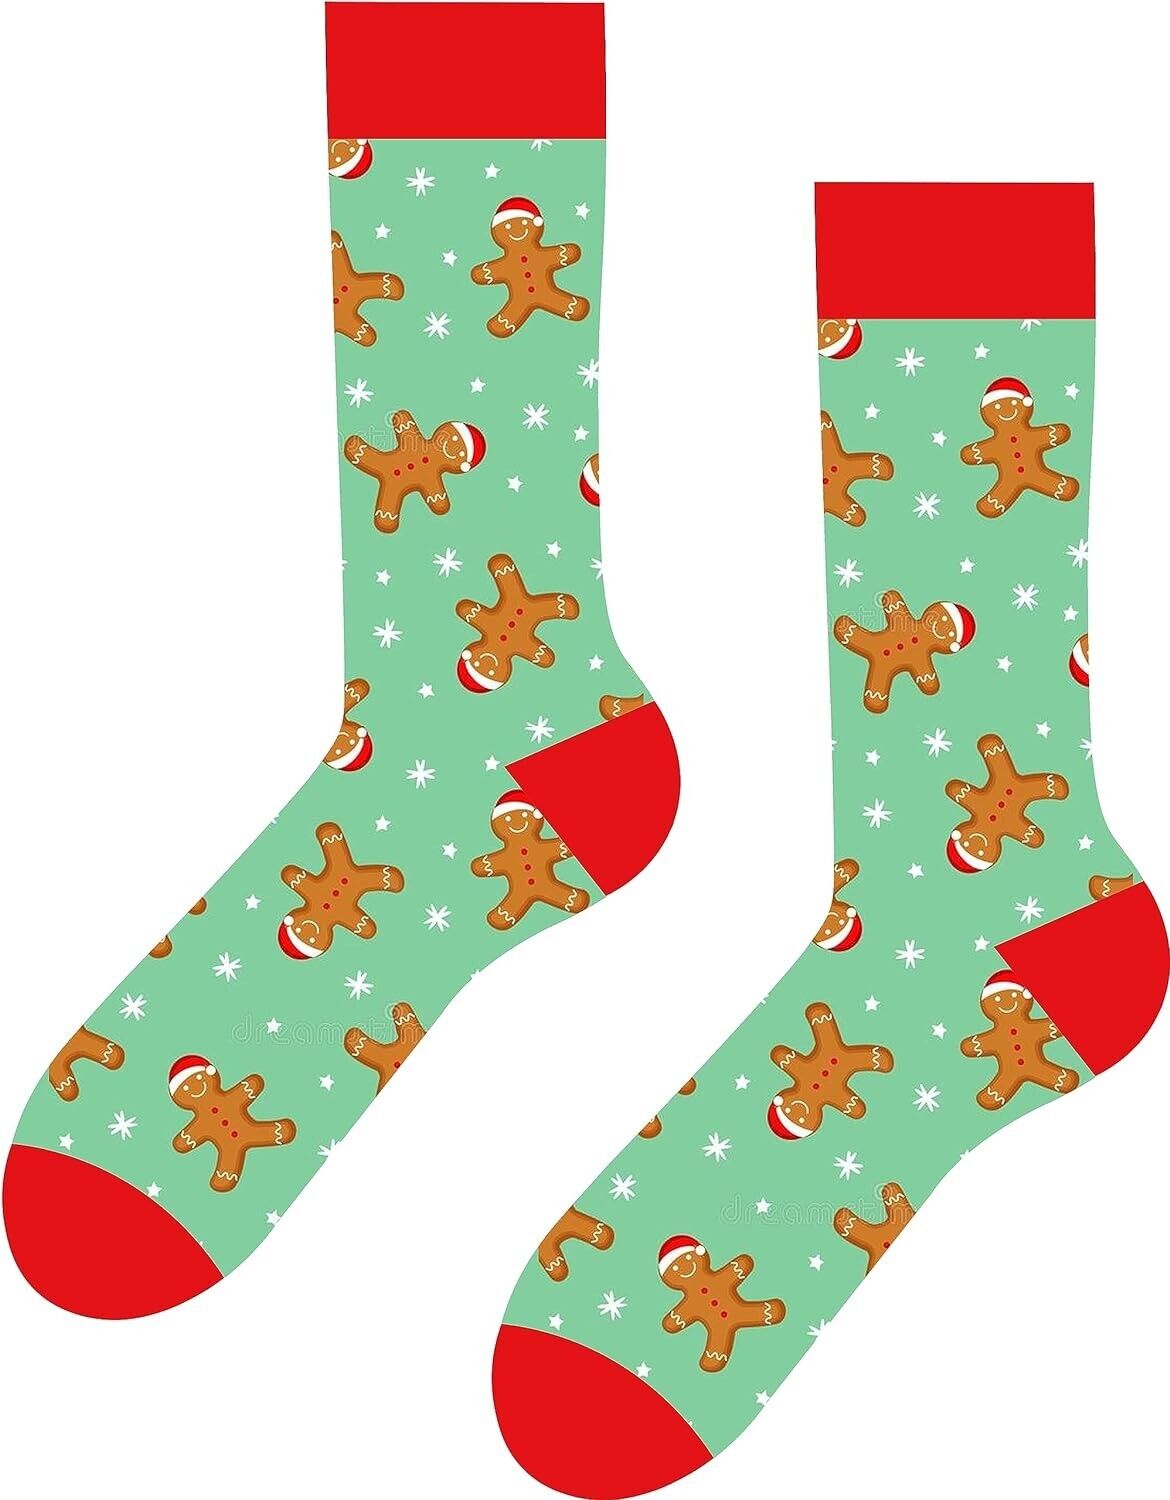 Neujahrsplätzchen gemusterte bunte Socken Weihnachtsgeschenk Weihnachten Socke🎀